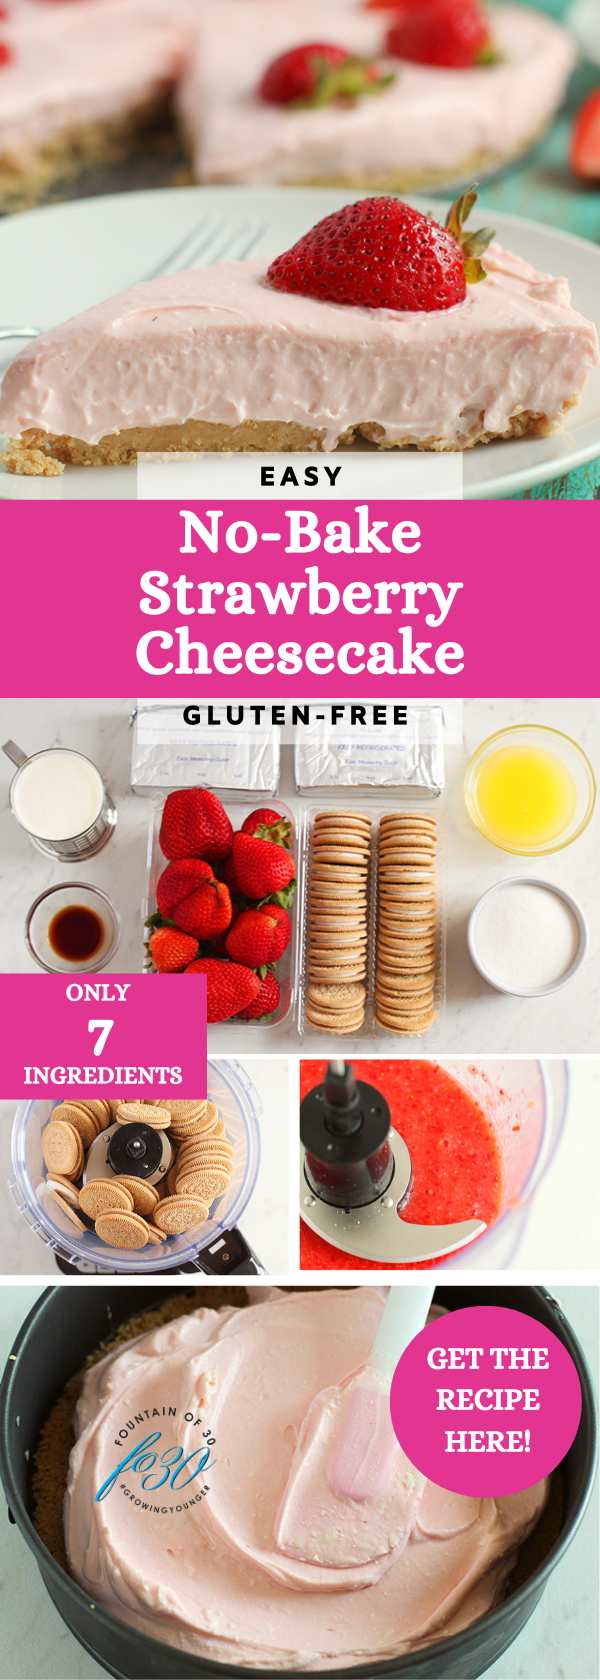 easy no-bake fresh strawberry cheesecake gluten-free fountainof30